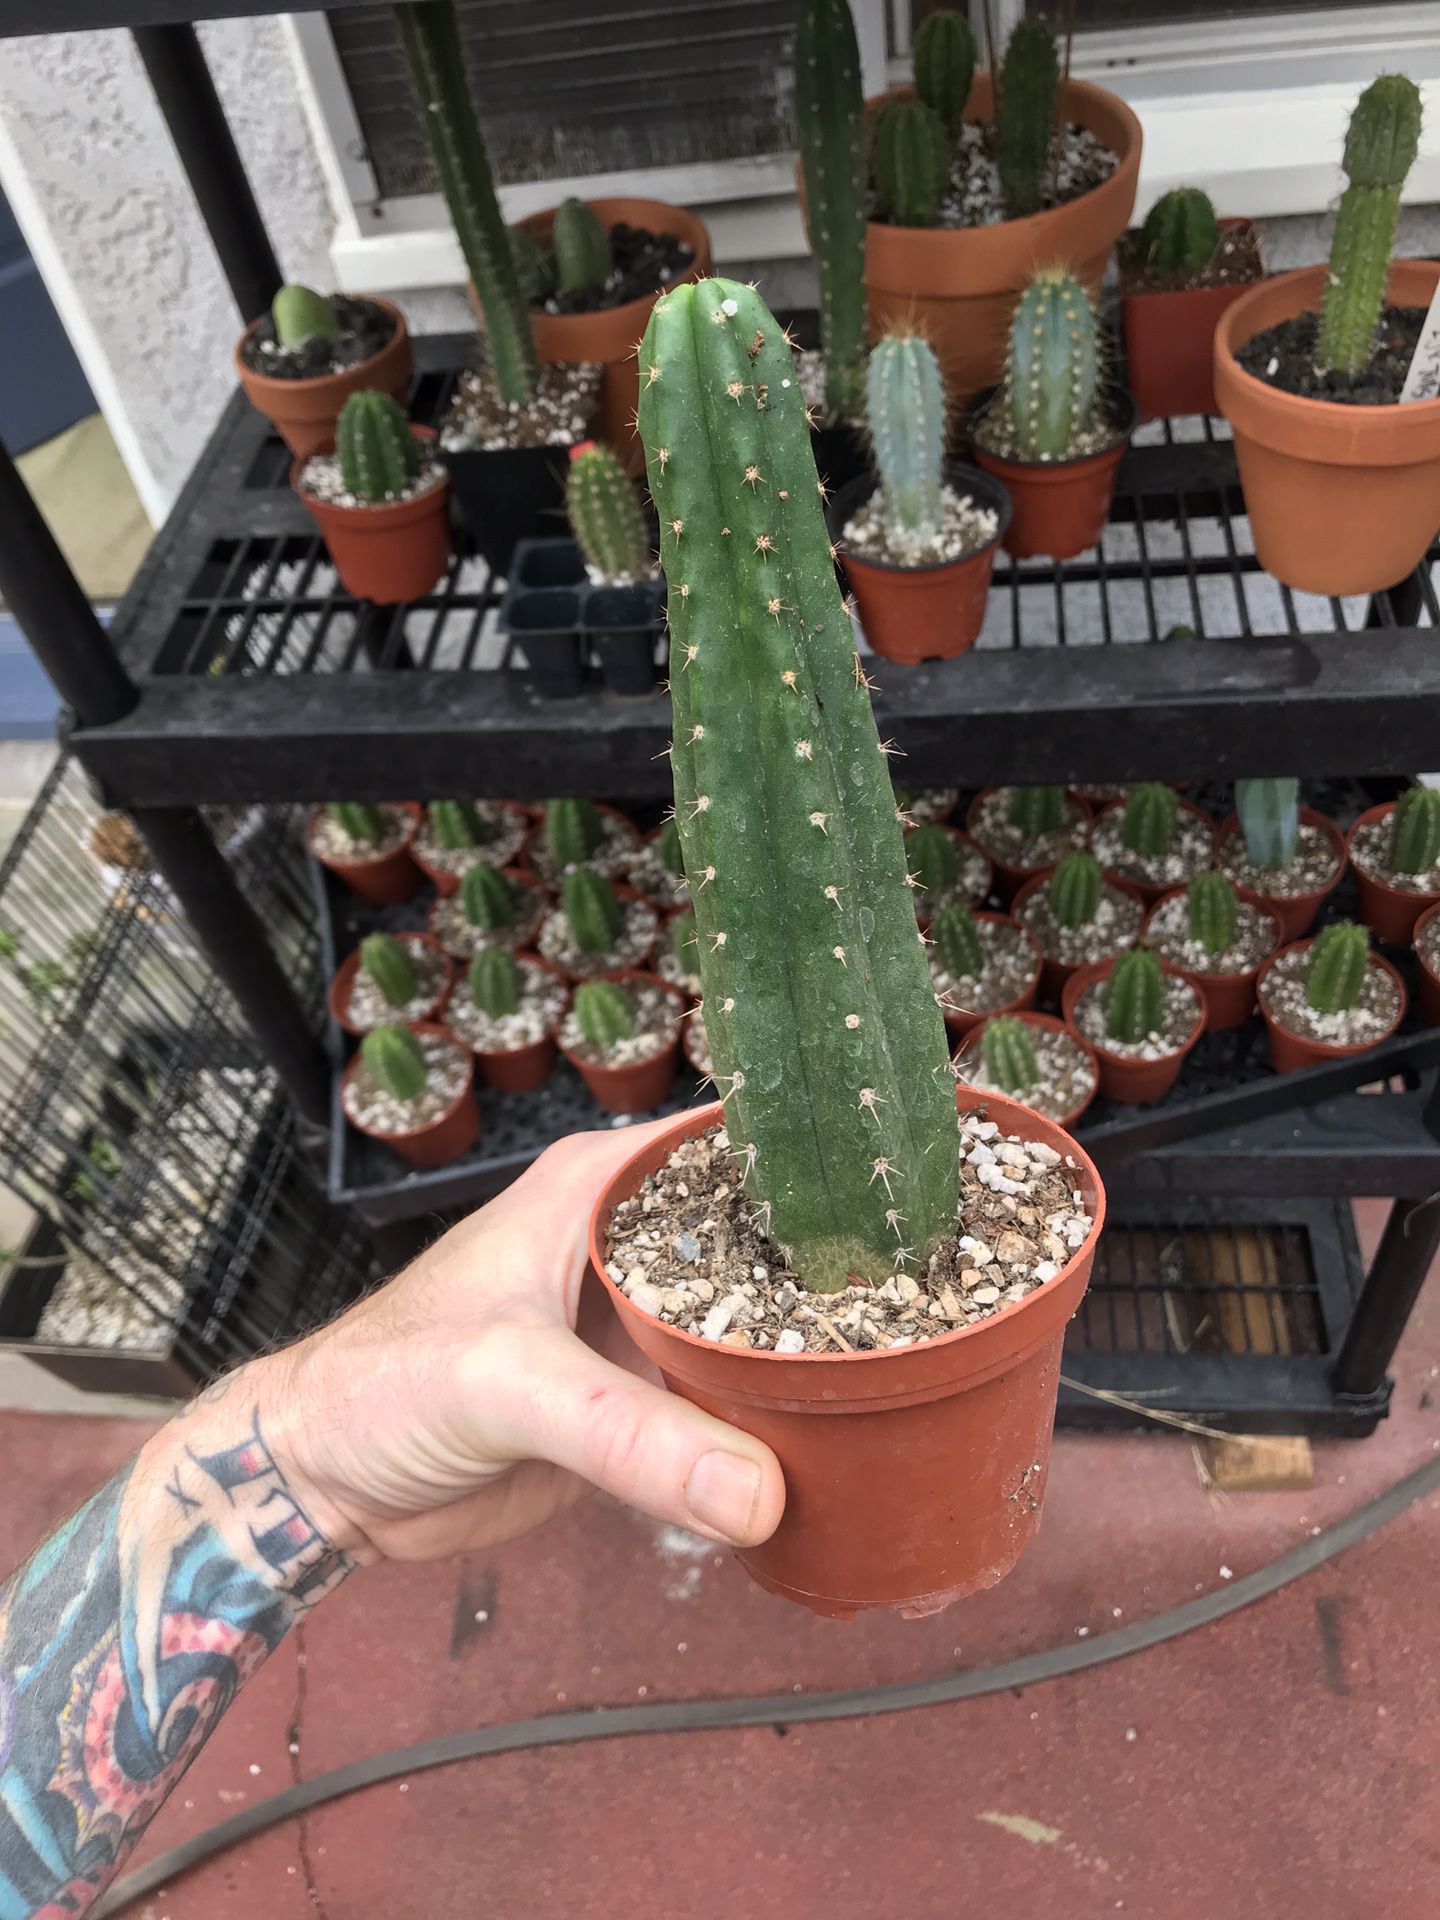 Trichocereus pachanoi San Pedro cactus seedling